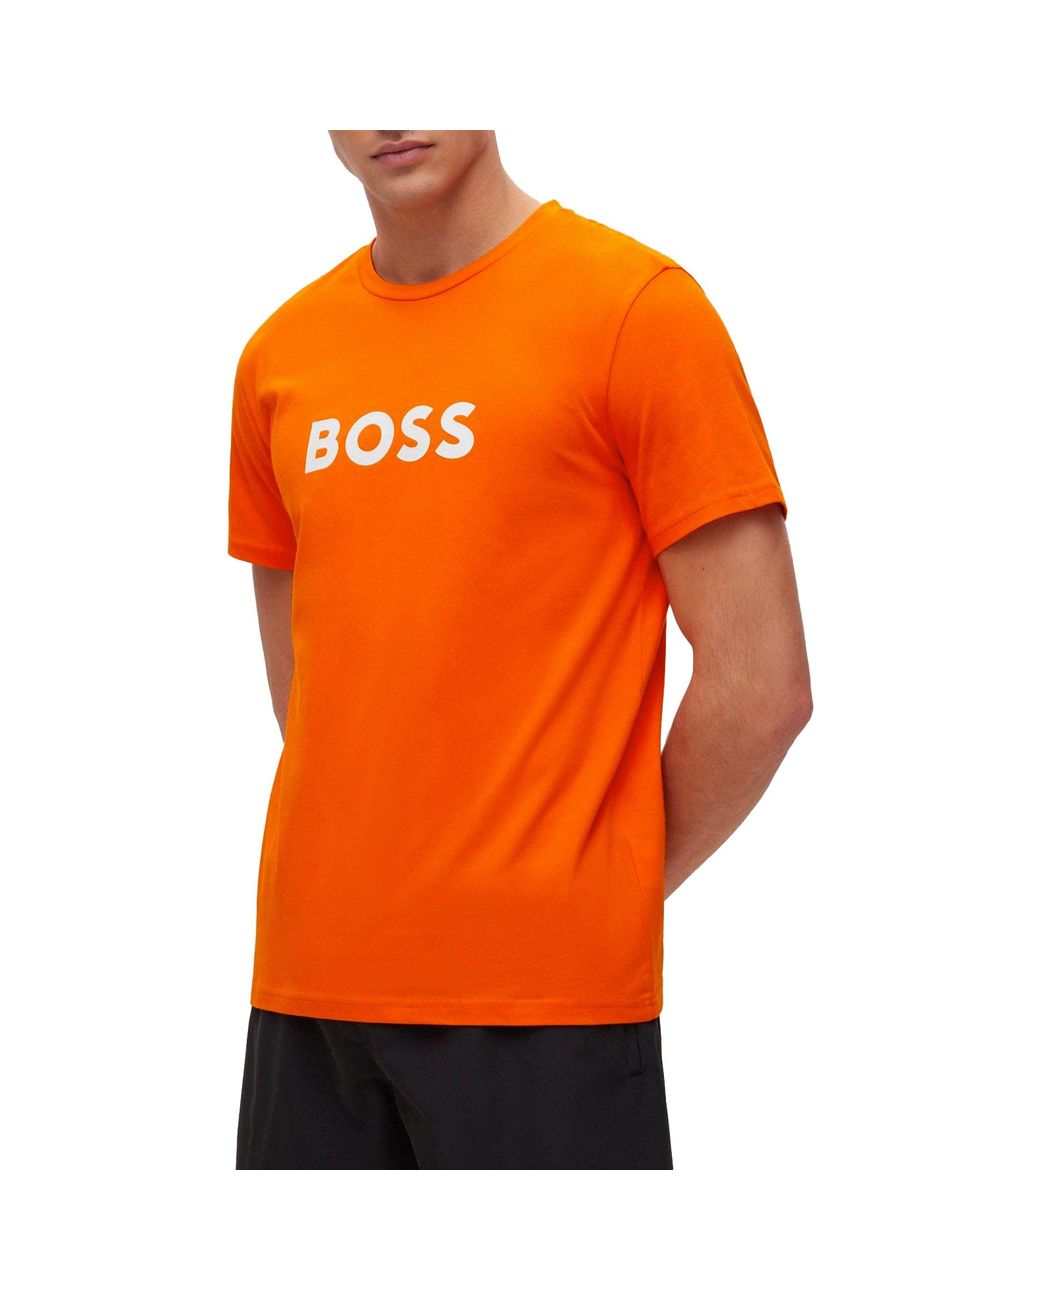 BOSS by HUGO BOSS Rn T-shirt in Orange for Men | Lyst